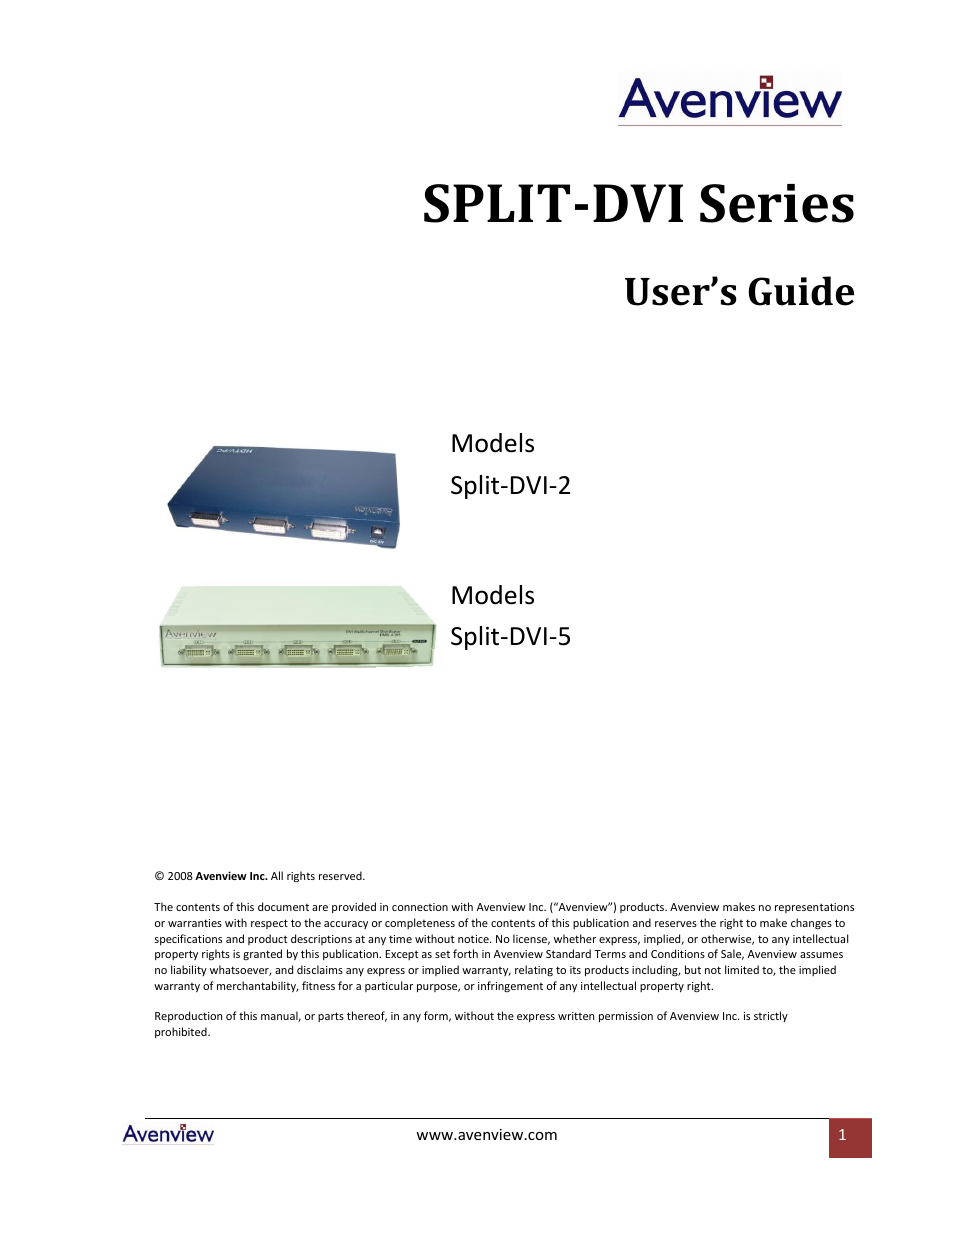 SPLIT-DVI Series SPLIT-DVI-2